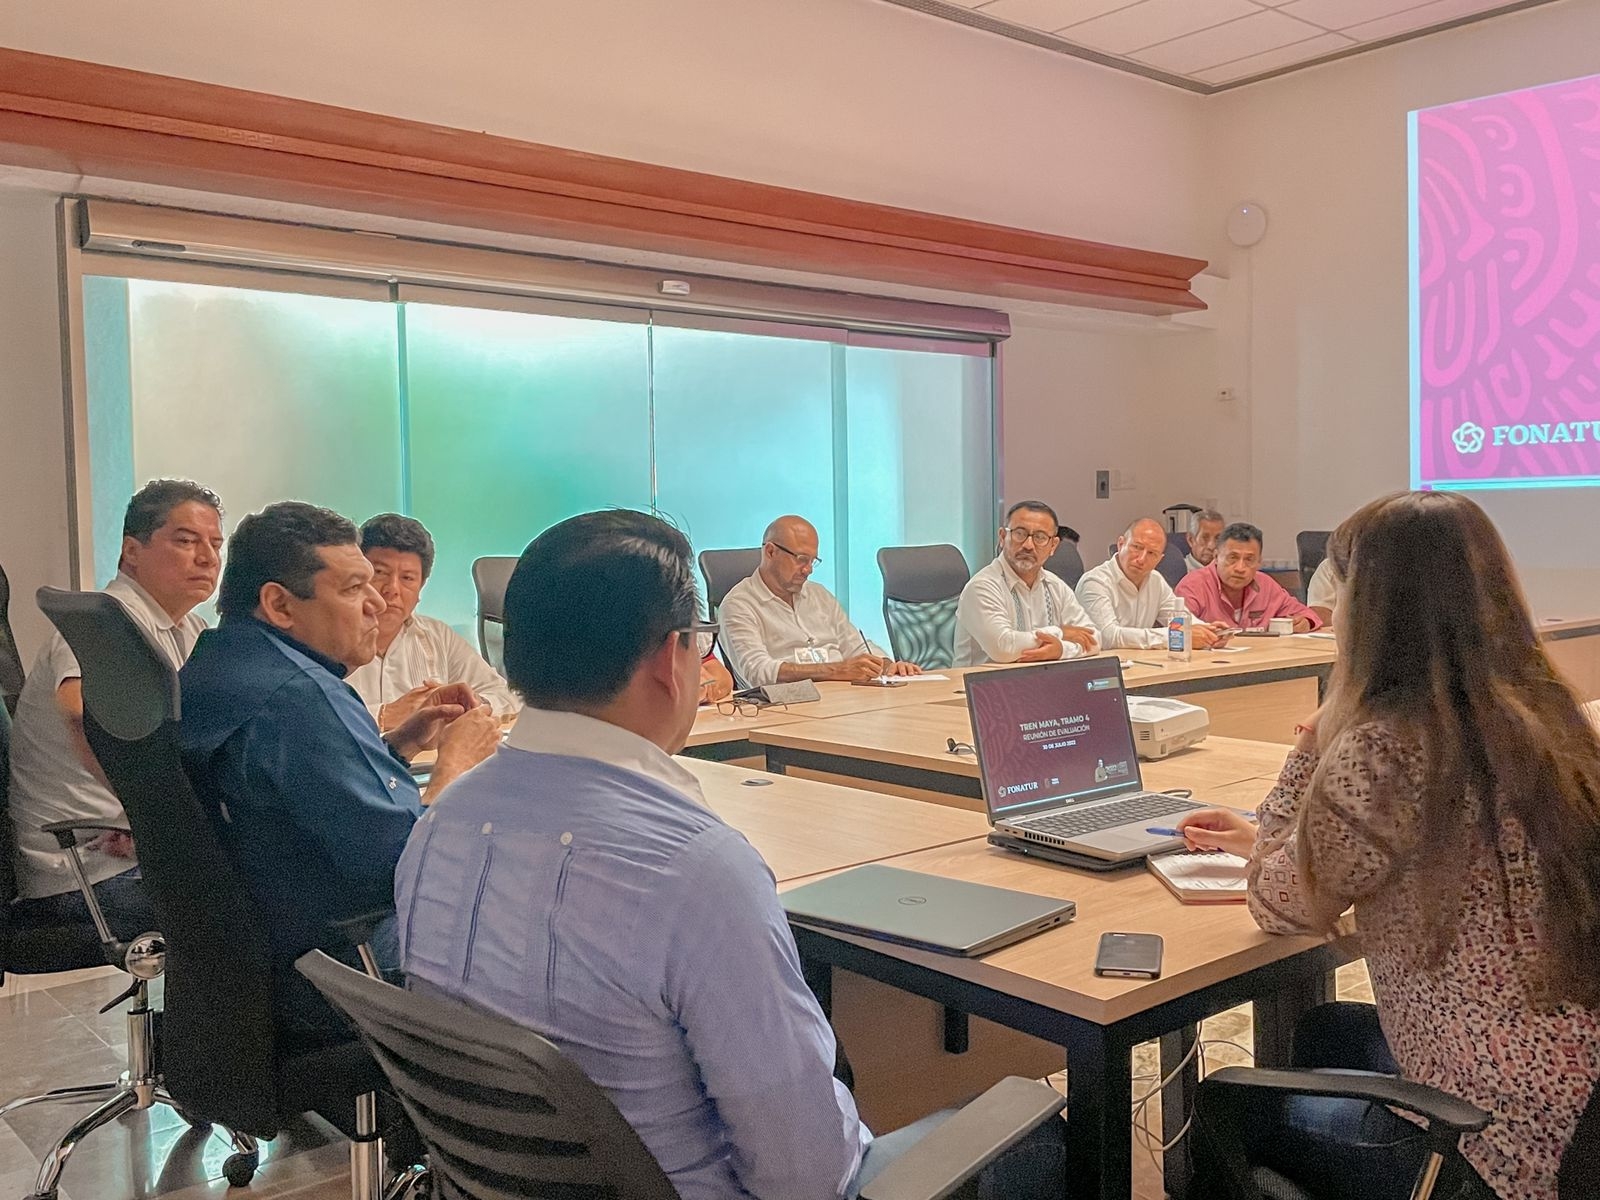 La reunión de Javier May, titular de Fonatur, con empresarios de Quintana Roo se llevó a cabo en las oficinas de la dependencia en Cancún